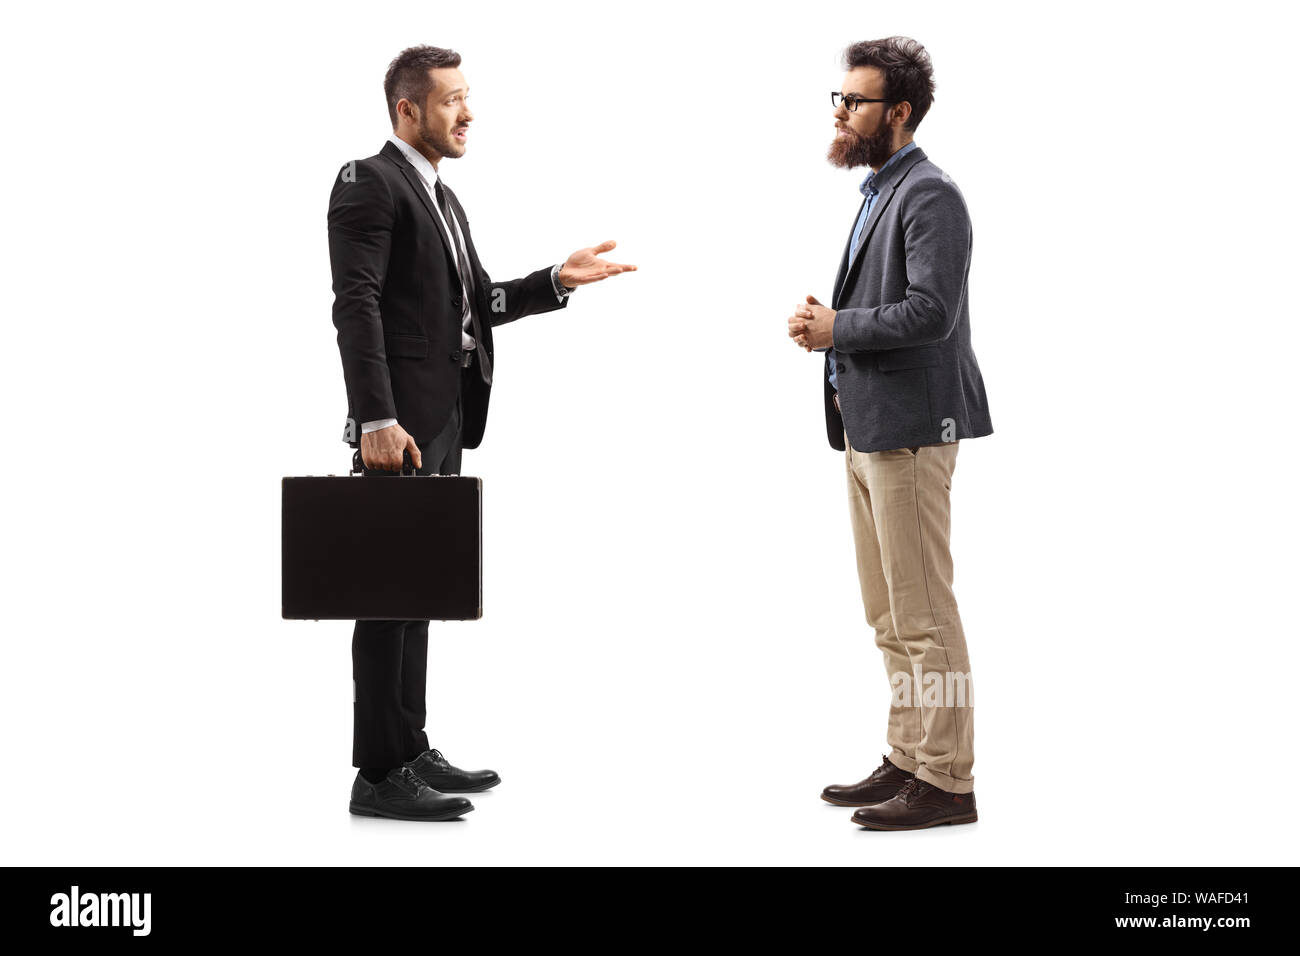 Volle Länge Profil Schuß eines junge Unternehmer mit einem Koffer zu erklären, ein bärtiger Mann auf weißem Hintergrund Stockfoto